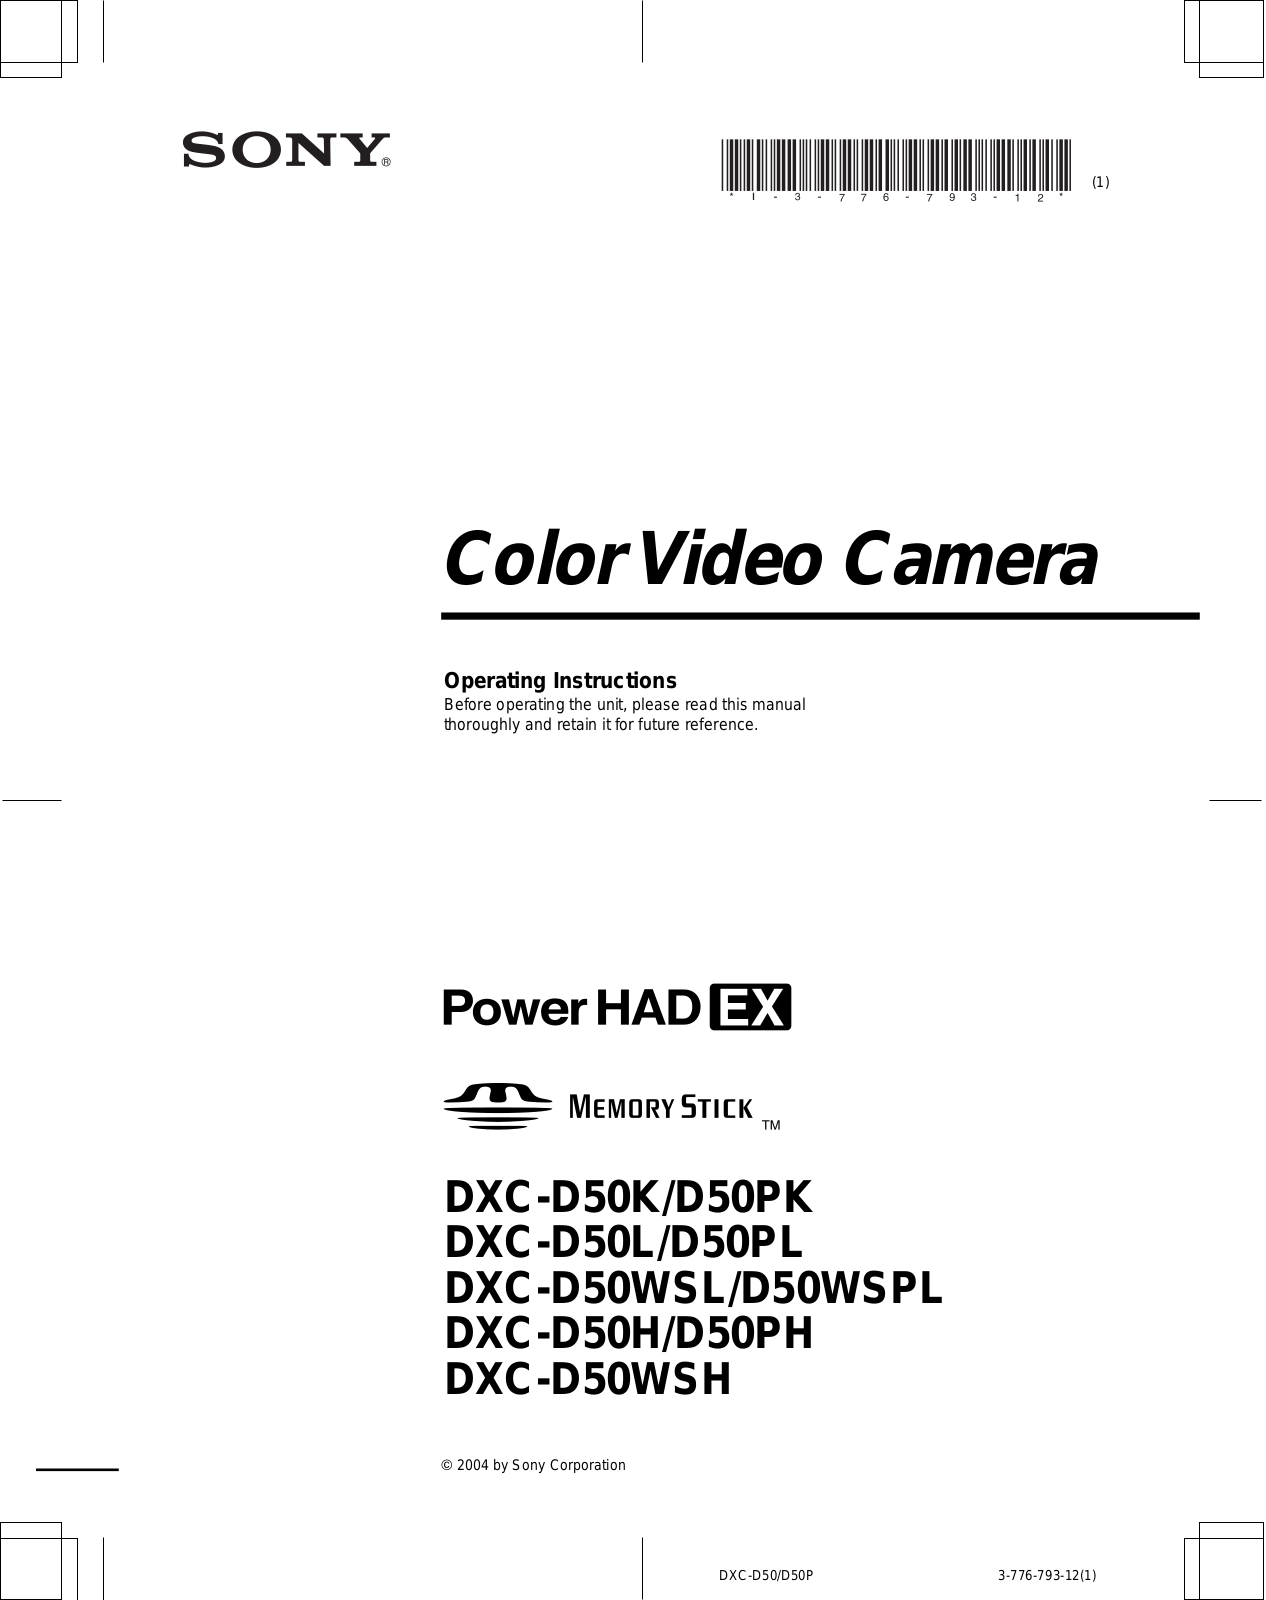 Sony DXC-D50K, DXC-D50PK, DXC-D50L, DXC-D50WSL, DXC-D50WSPL User Manual